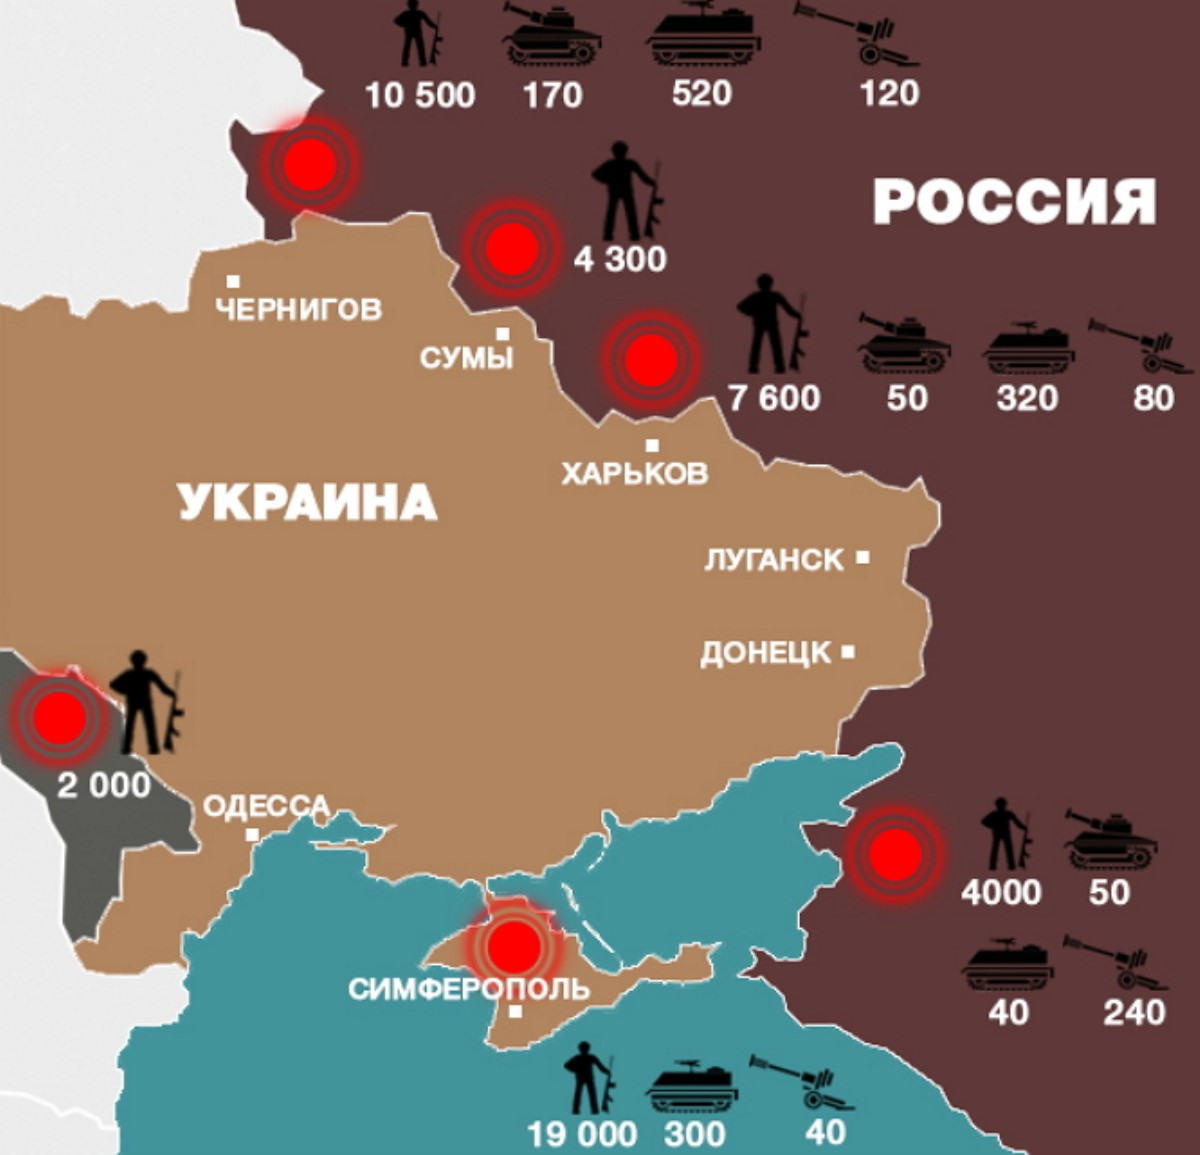 Чем Россия может ударить если пойдет полномасштабной войной на Украину